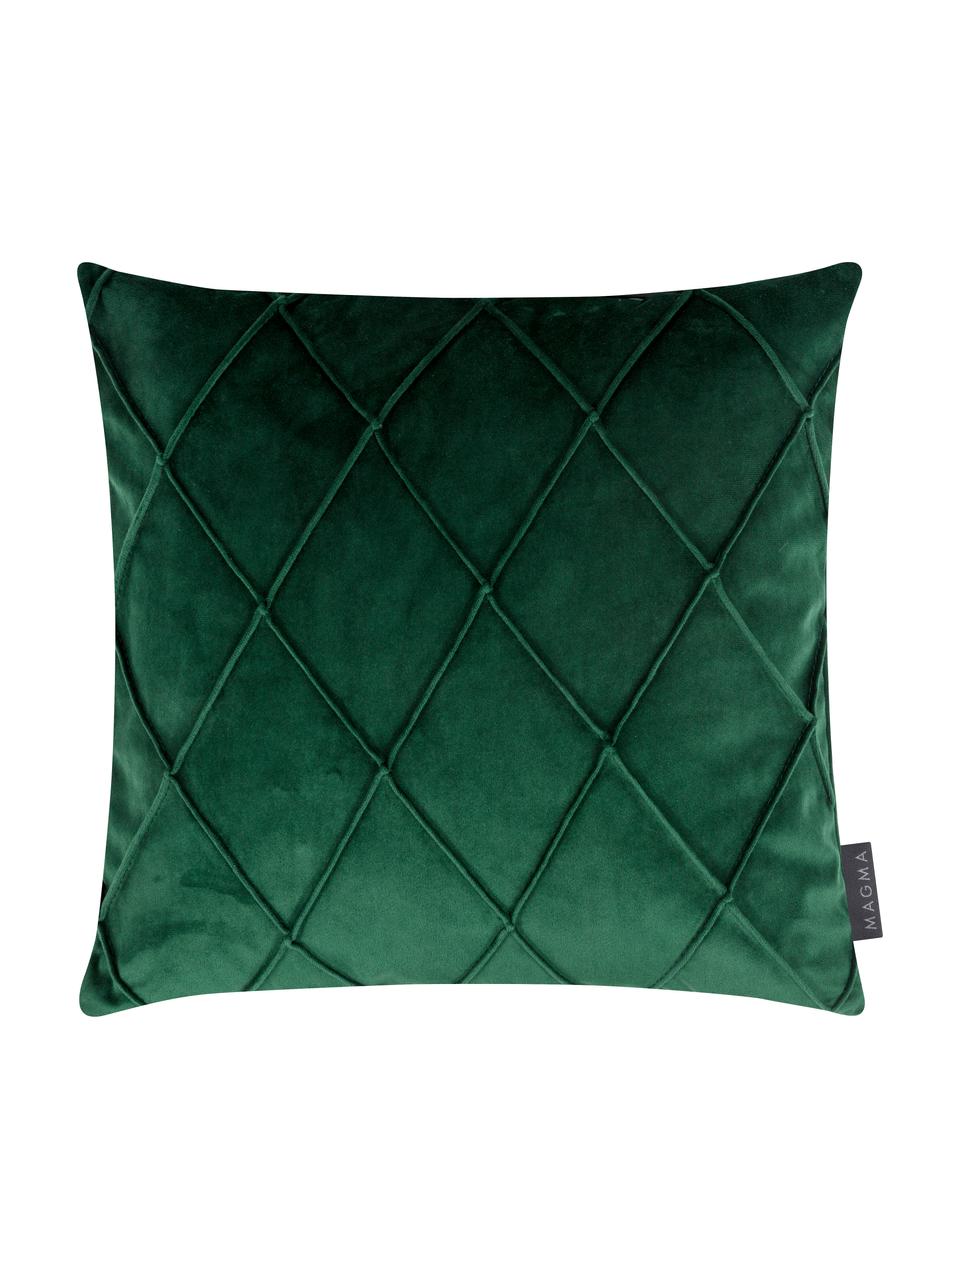 Samt-Kissenhülle Nobless in Grün mit erhabenem Rautenmuster, 100% Polyestersamt, Waldgrün, B 40 x L 40 cm